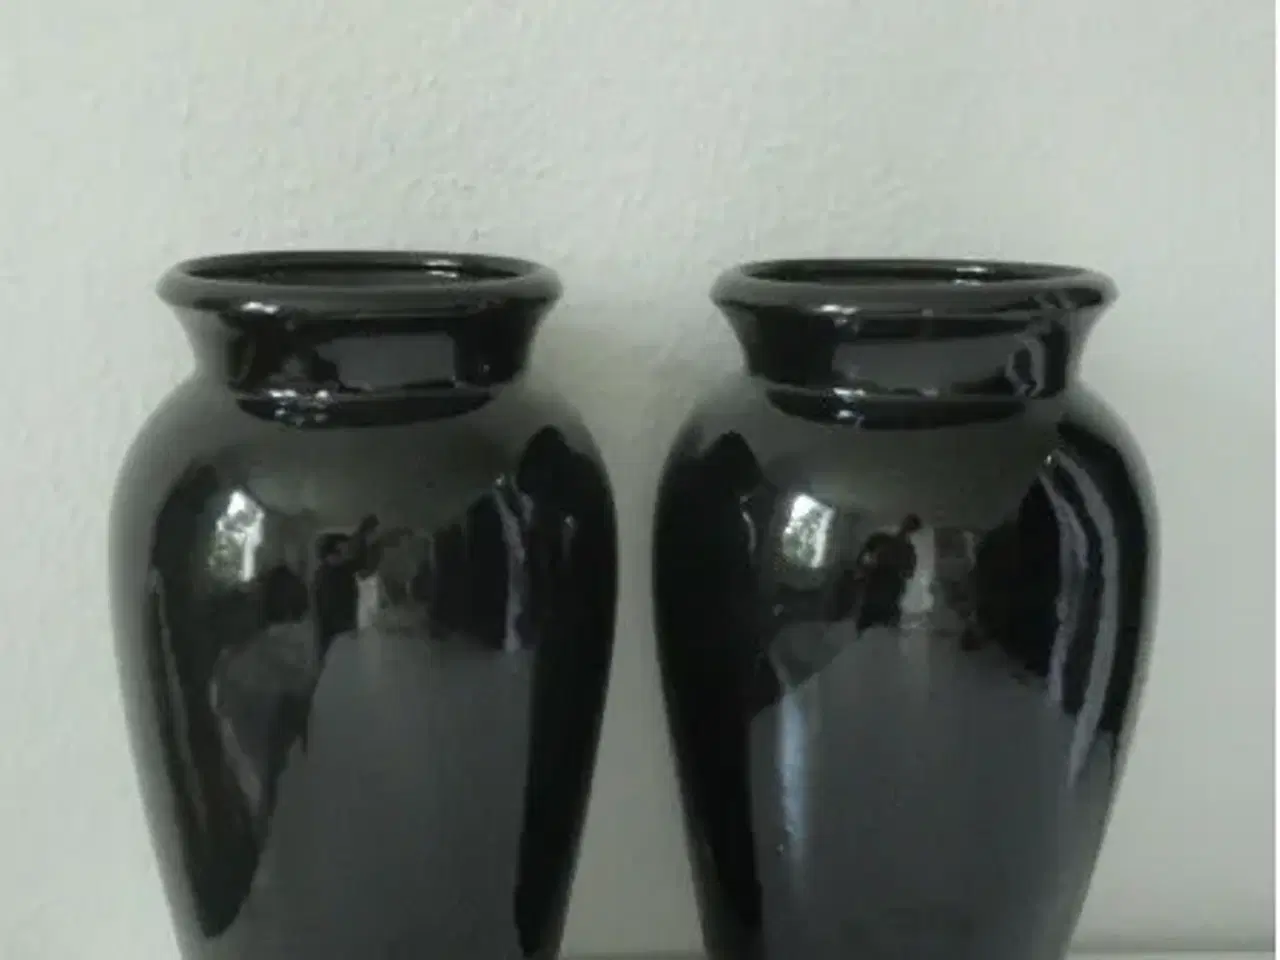 Billede 1 - 2 høje sorte vaser, højde 35cm. 150,-kr pr. stk.